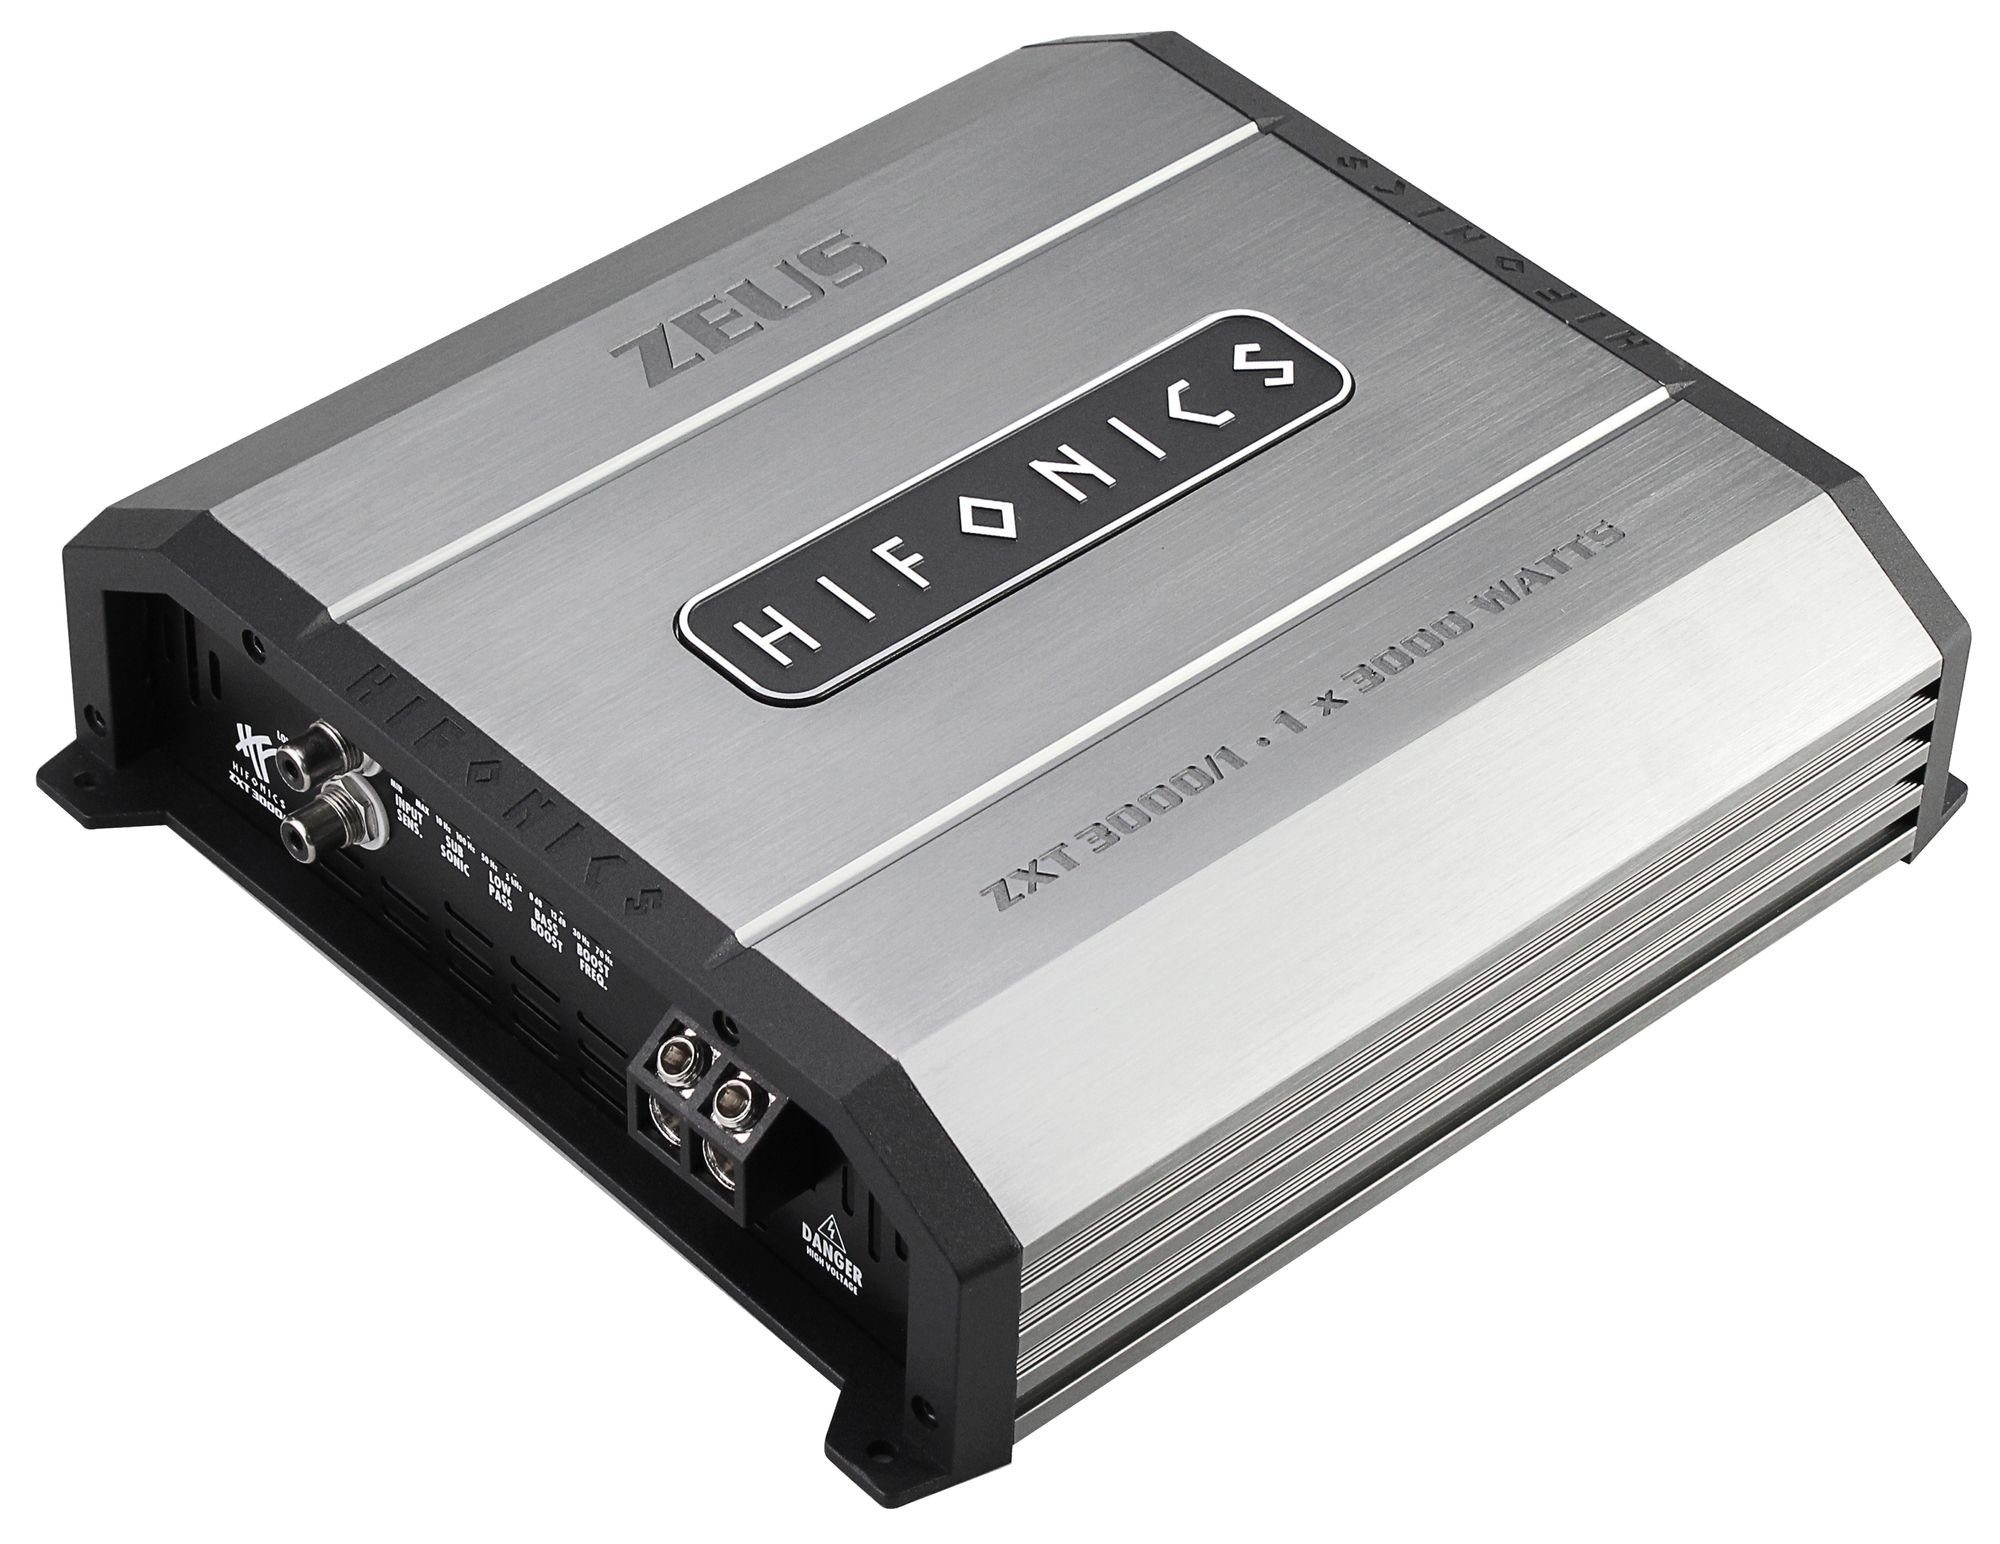 Hifonics ZXT3000 1 Ultra Kanäle: D Monoblock (Anzahl 1-Kanal Verstärker Class Verstärker Mono) Mono